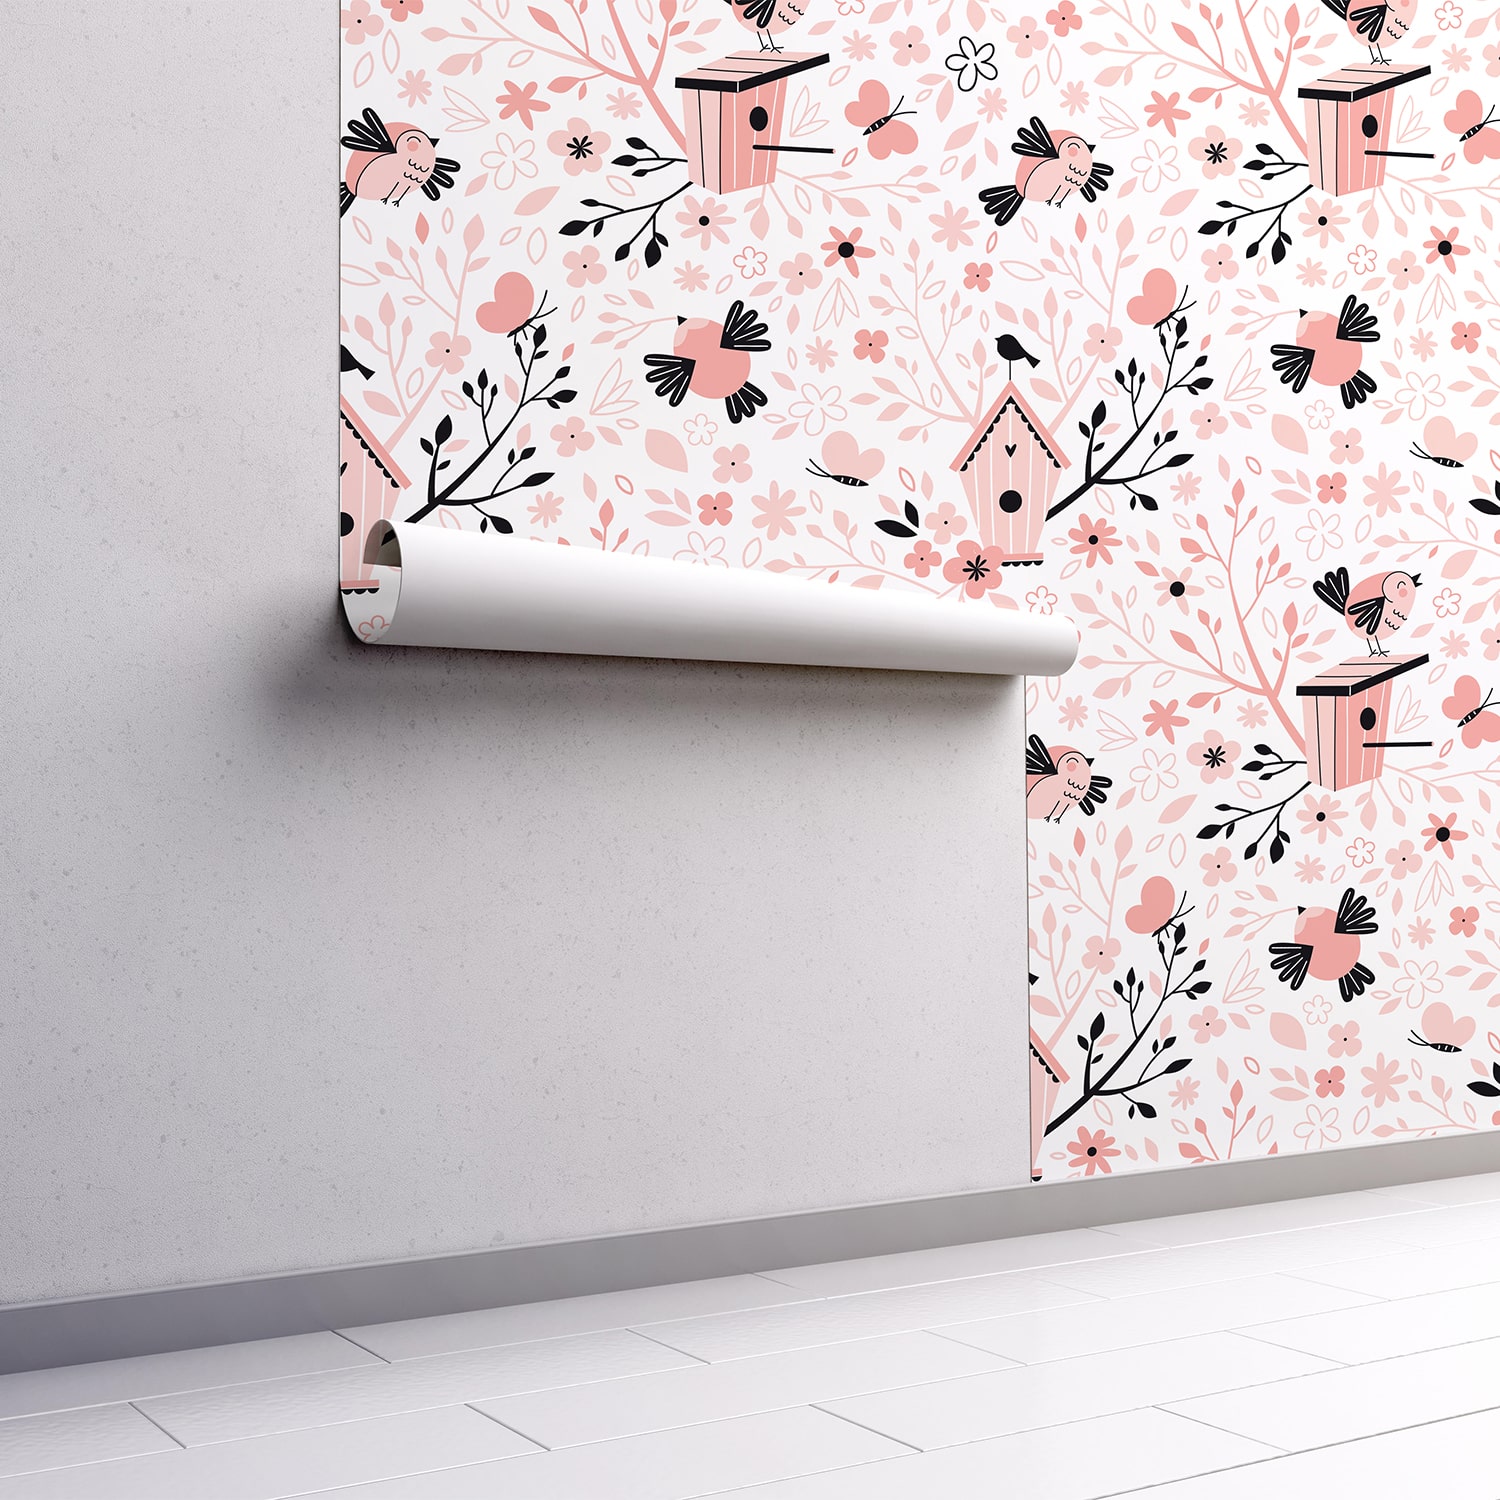 PP73-mur.rouleau-papier-peint-adhesif-decoratif-revetement-vinyle-motifs-arbre-à-oiseau-renovation-meuble-mur-min